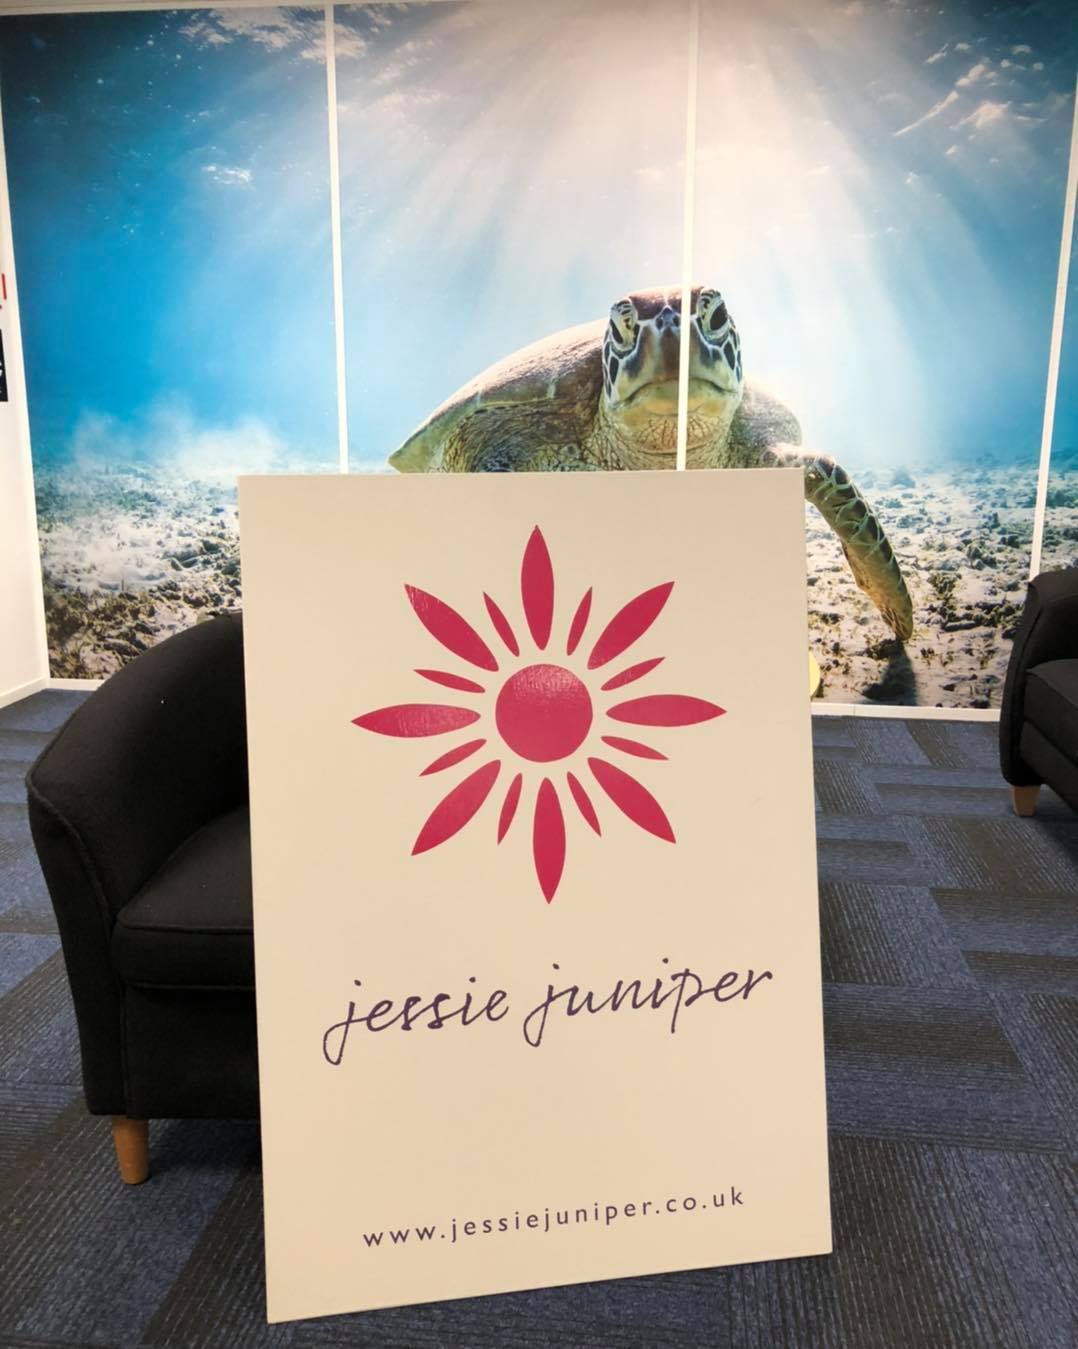 Jessie Juniper